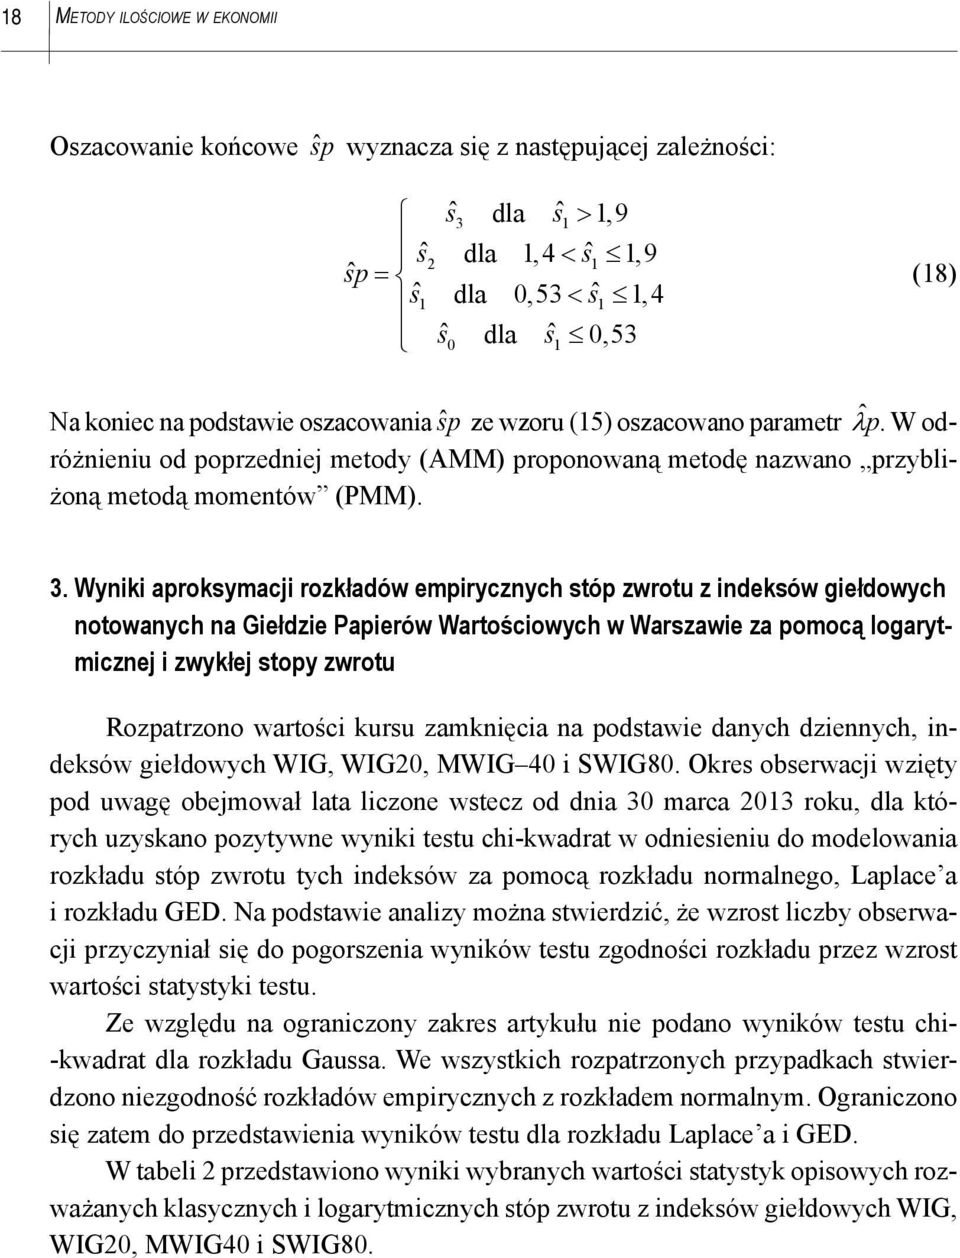 Wyniki aproksymacji rozkładów empirycznych stóp zwrotu z indeksów giełdowych notowanych na Giełdzie Papierów Wartościowych w Warszawie za pomocą logarytmicznej i zwykłej stopy zwrotu Rozpatrzono